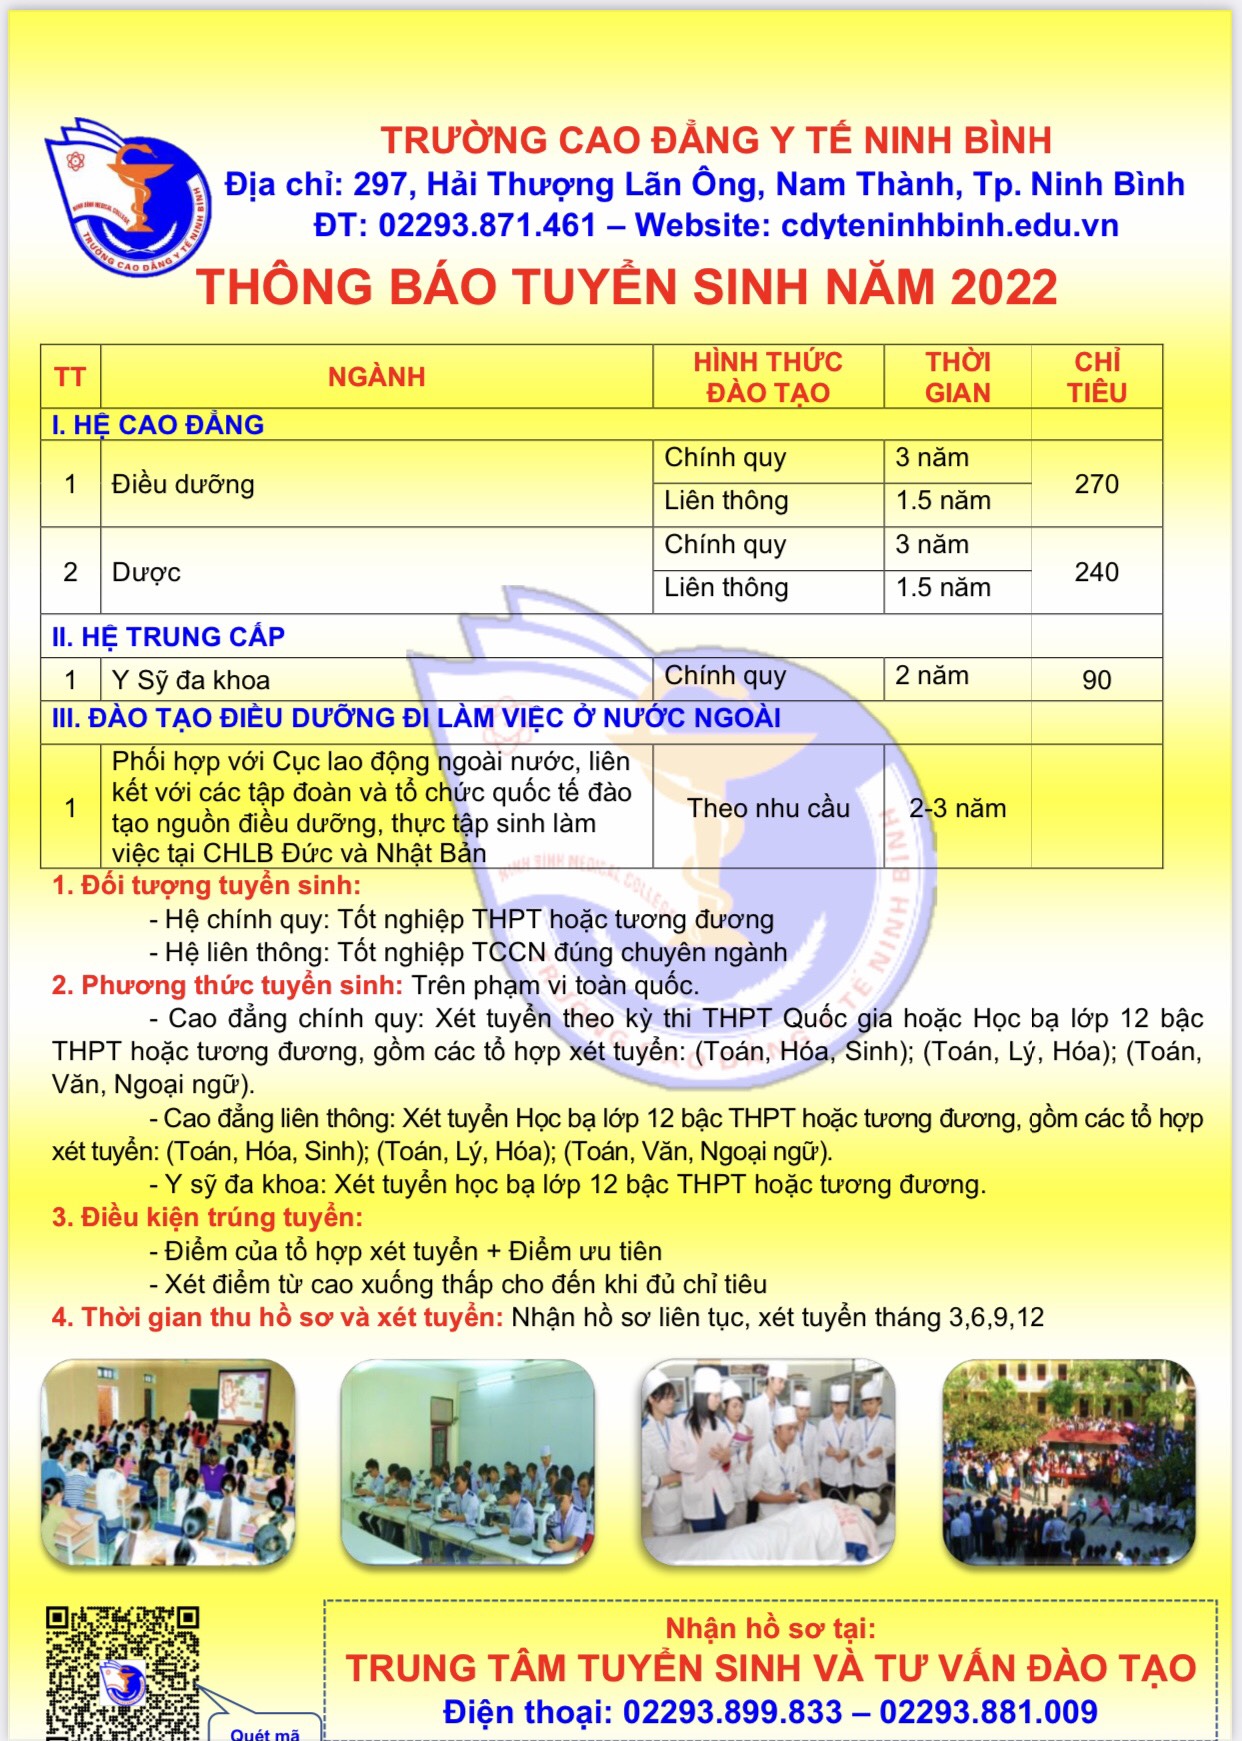 Thông báo tuyển sinh Trường Cao đẳng Y tế Ninh Bình năm 2022 - DNTT online